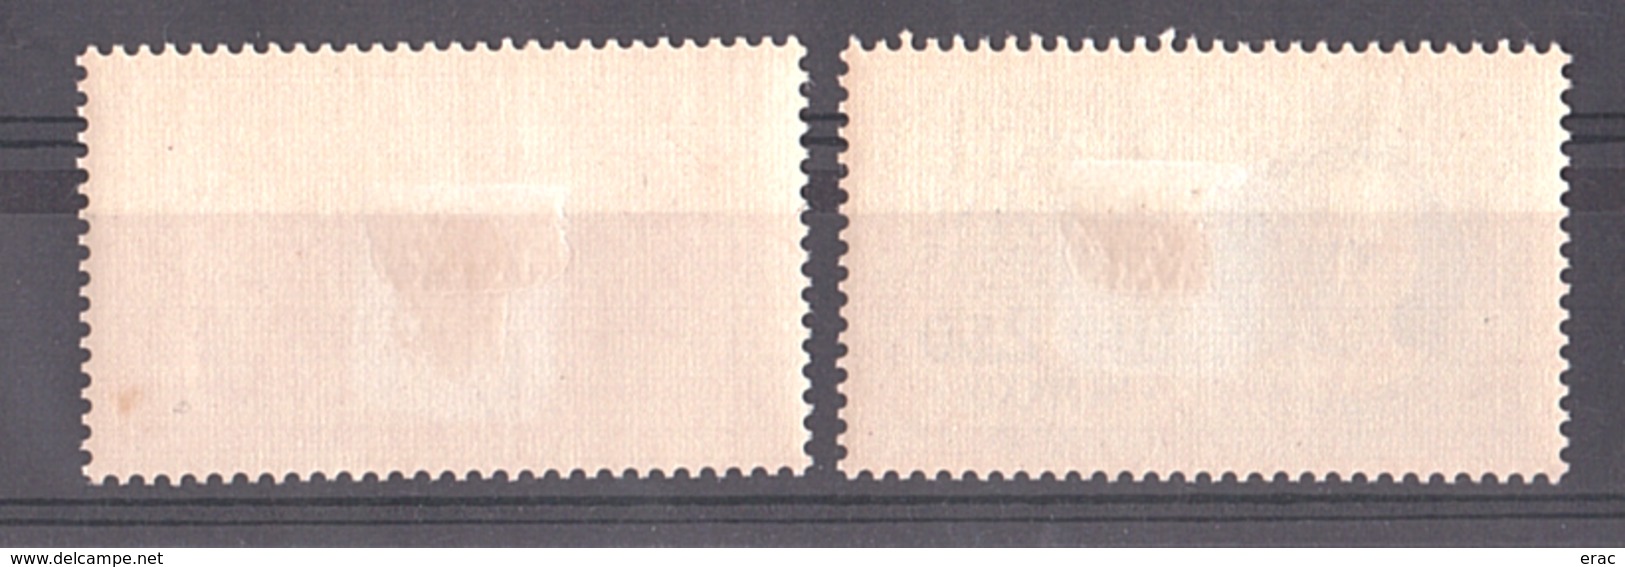 Vatican - 1929 - Timbres Par Exprès N° 1 Et 2 - Neufs * - Pie XI - Priority Mail